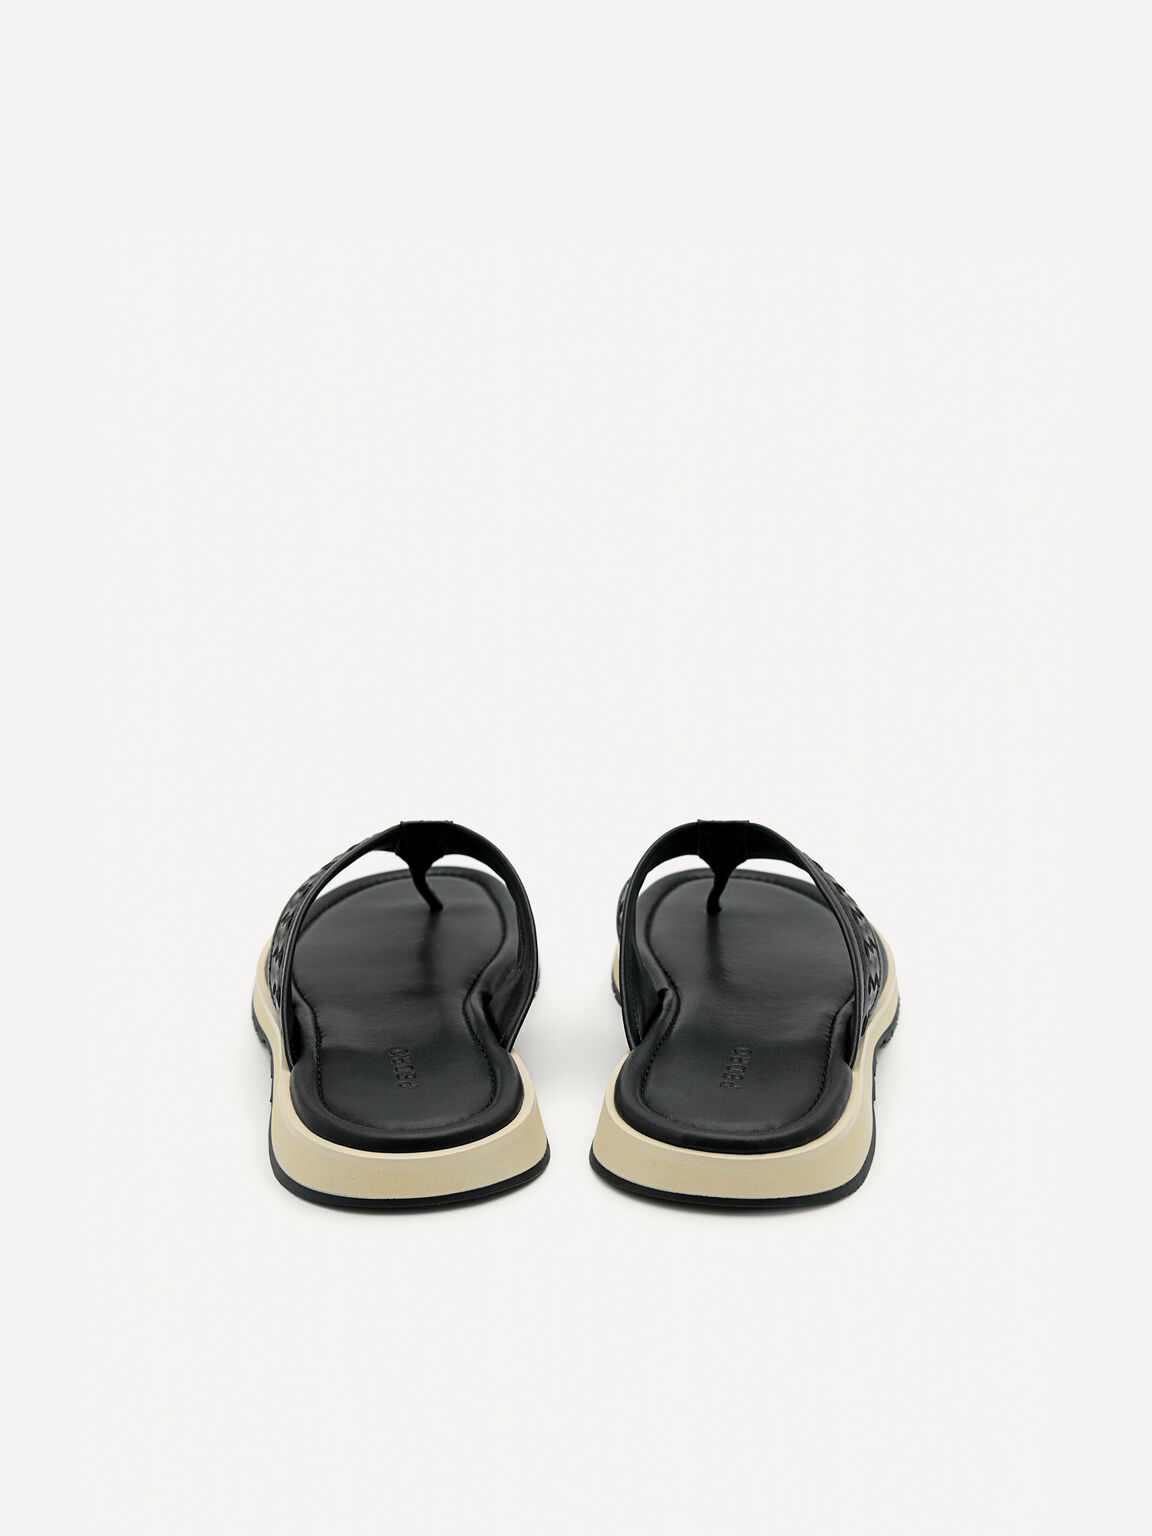 Woven Thong Sandals, Black, hi-res